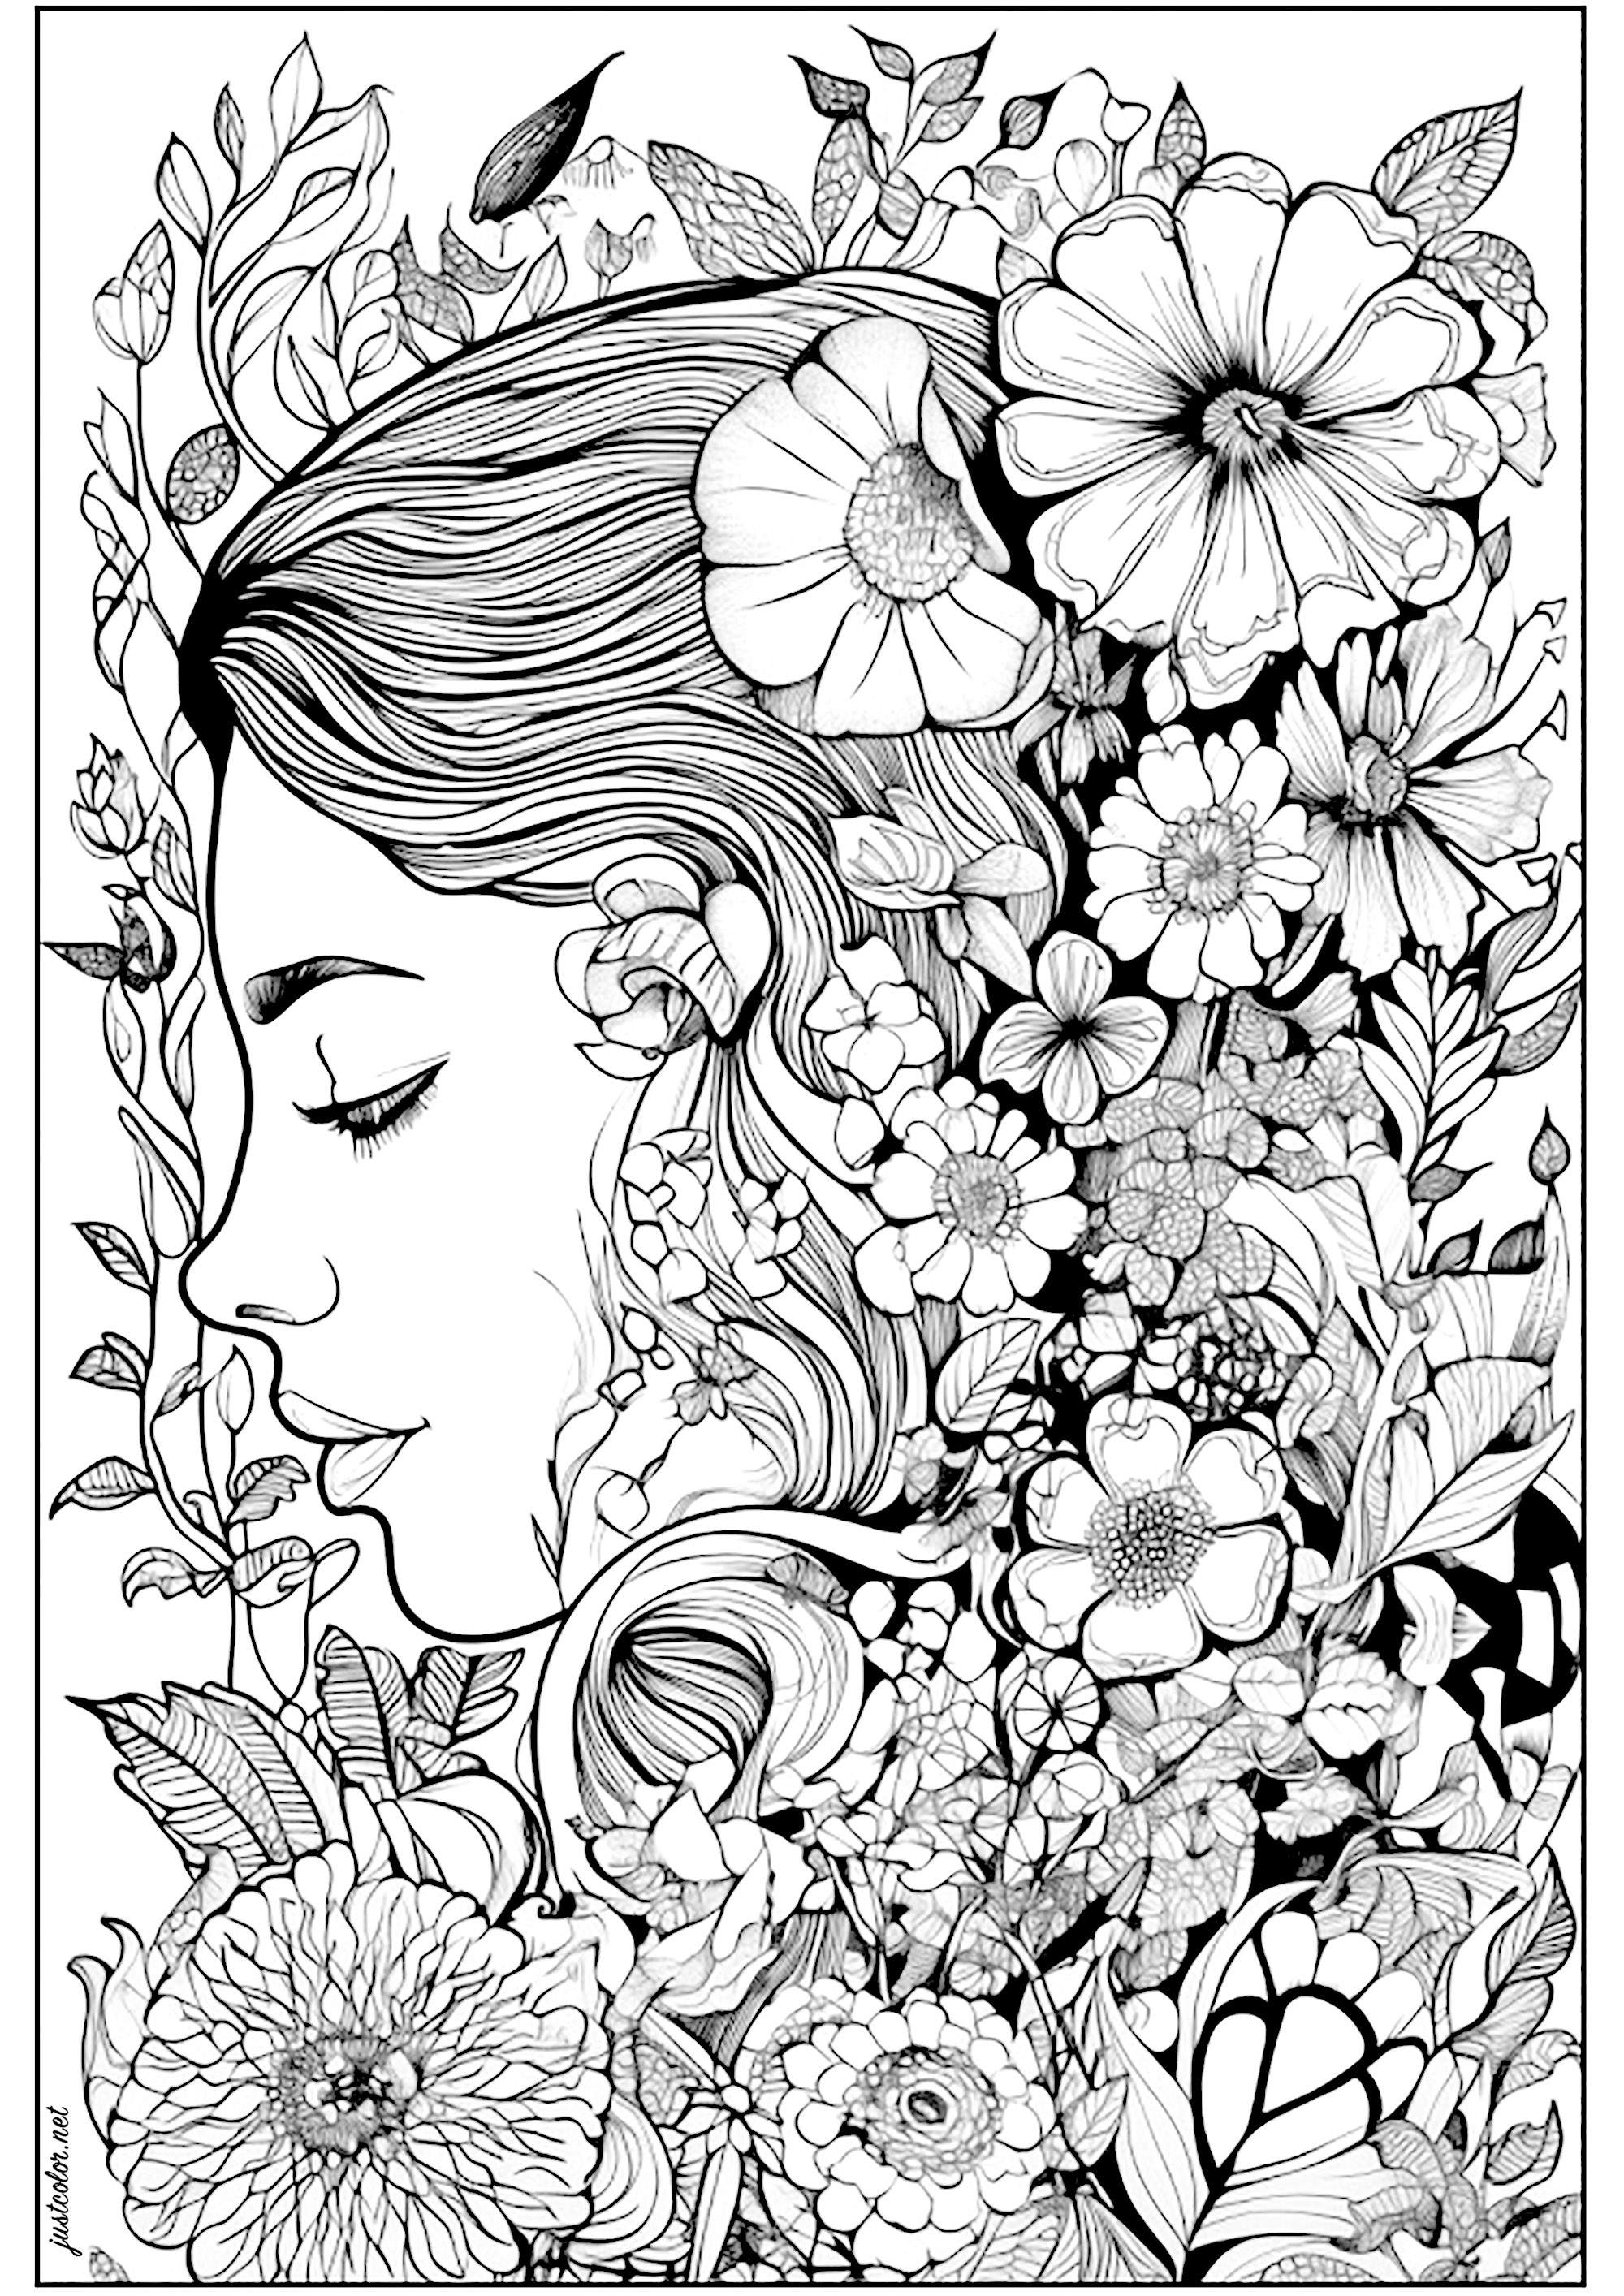 Rosto de uma mulher pensativa, rodeada de flores. Mulher rodeada de flores bonitas e variadas